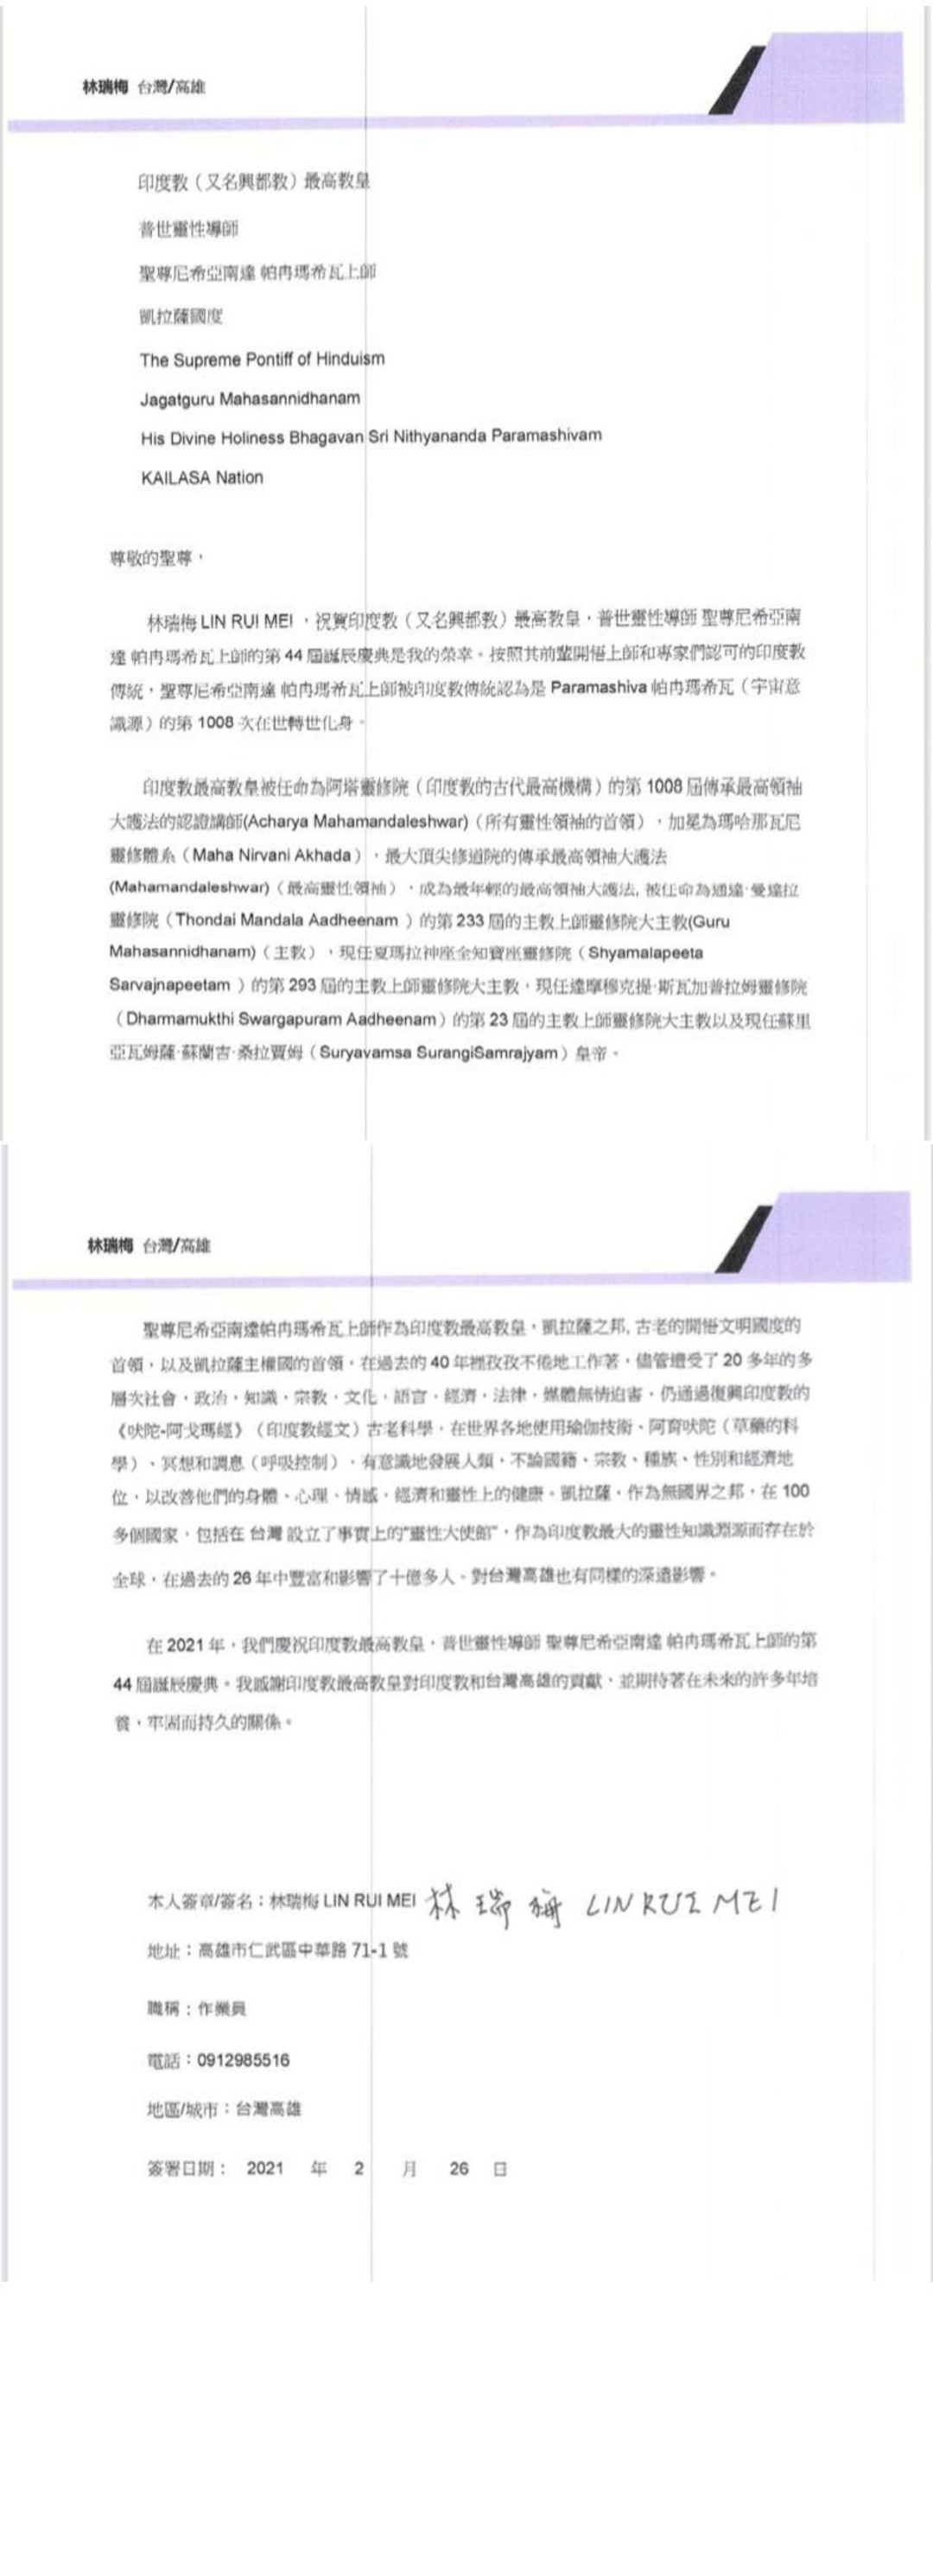 Taiwan---Lin-Rui-Mei---Feb-26--2021-(Proclamation)-1FYRbPQQEy FkJkcakf88Q97AL Cb4tmZ.pdf